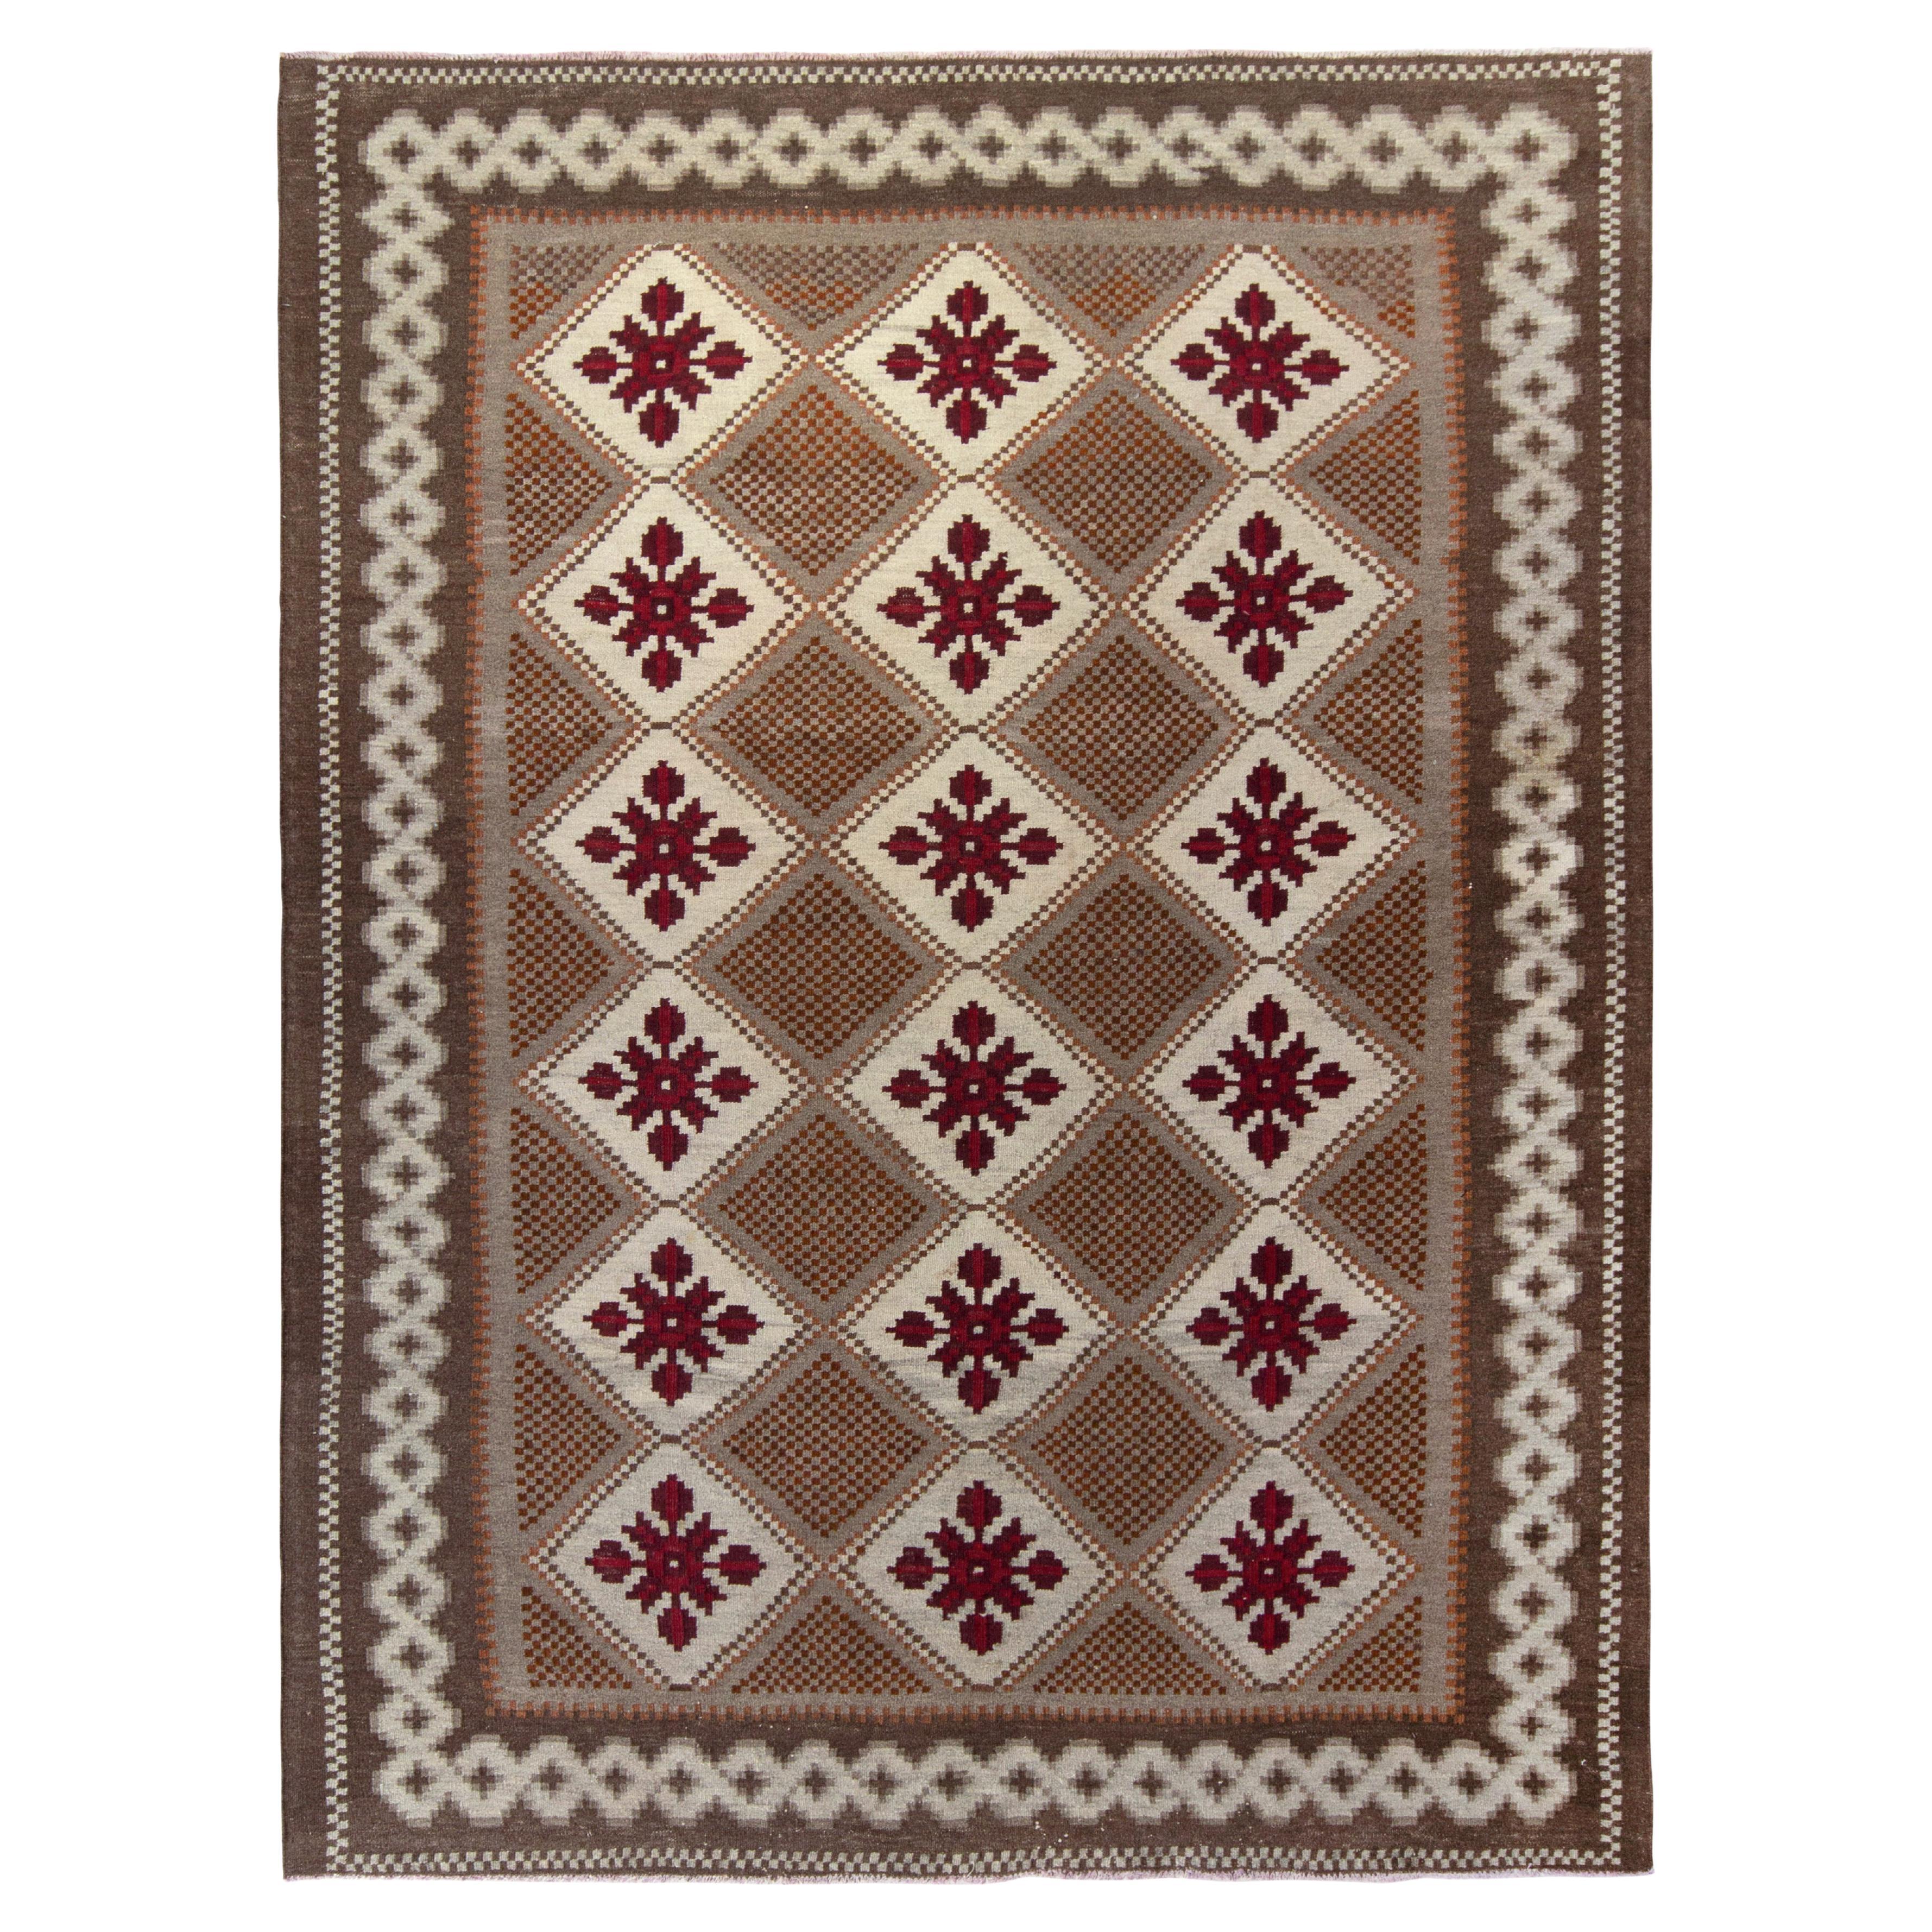 Handwoven Vintage Moldavian Rug in Beige-Brown, Floral Pattern by Rug & Kilim For Sale